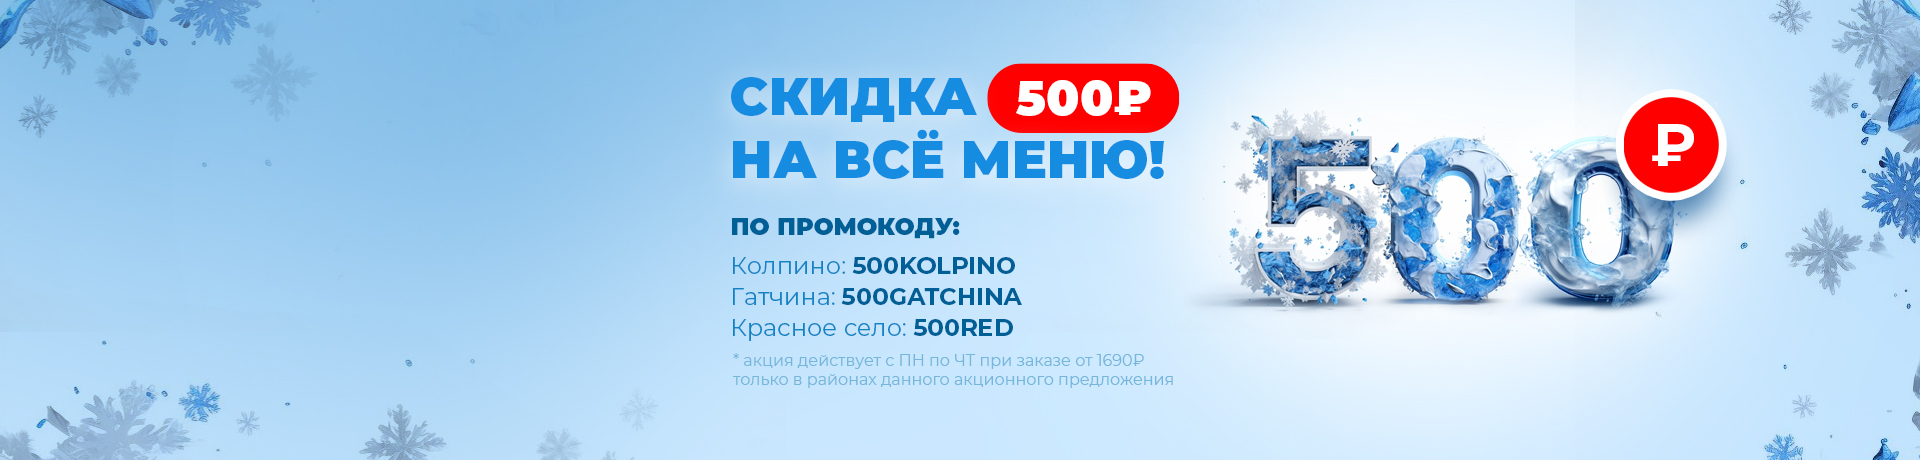 ТВОЙ РАЙОН и скидка 500 рублей 🤩